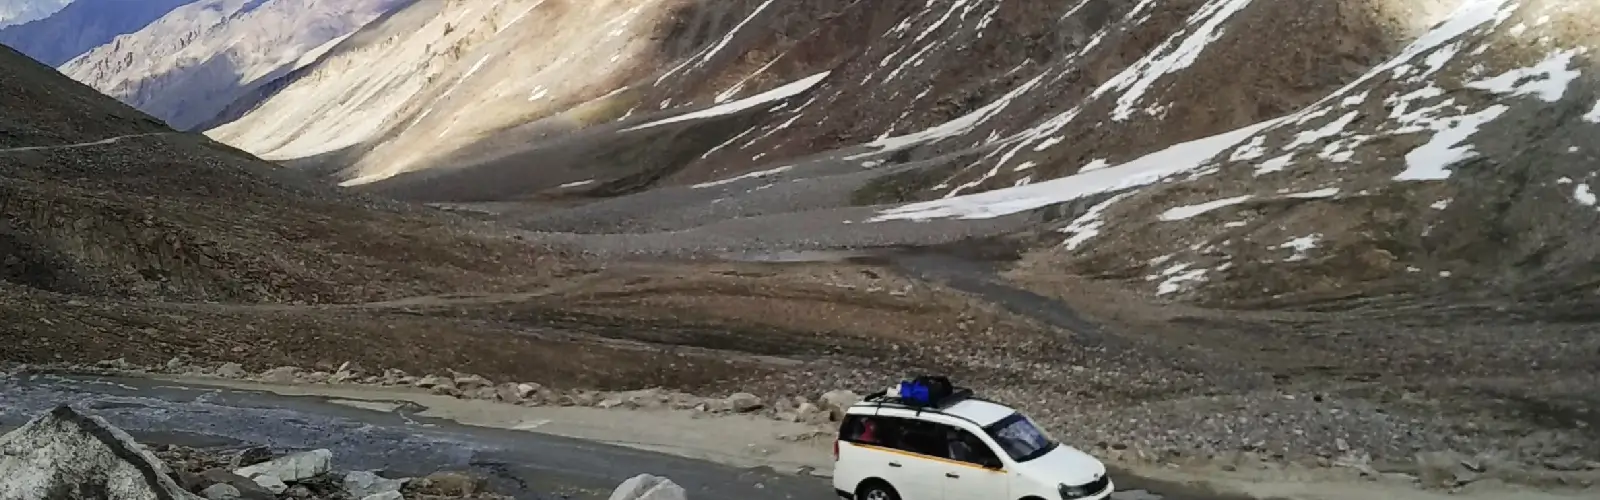 ladakh-monastery-jeep-safari-tour